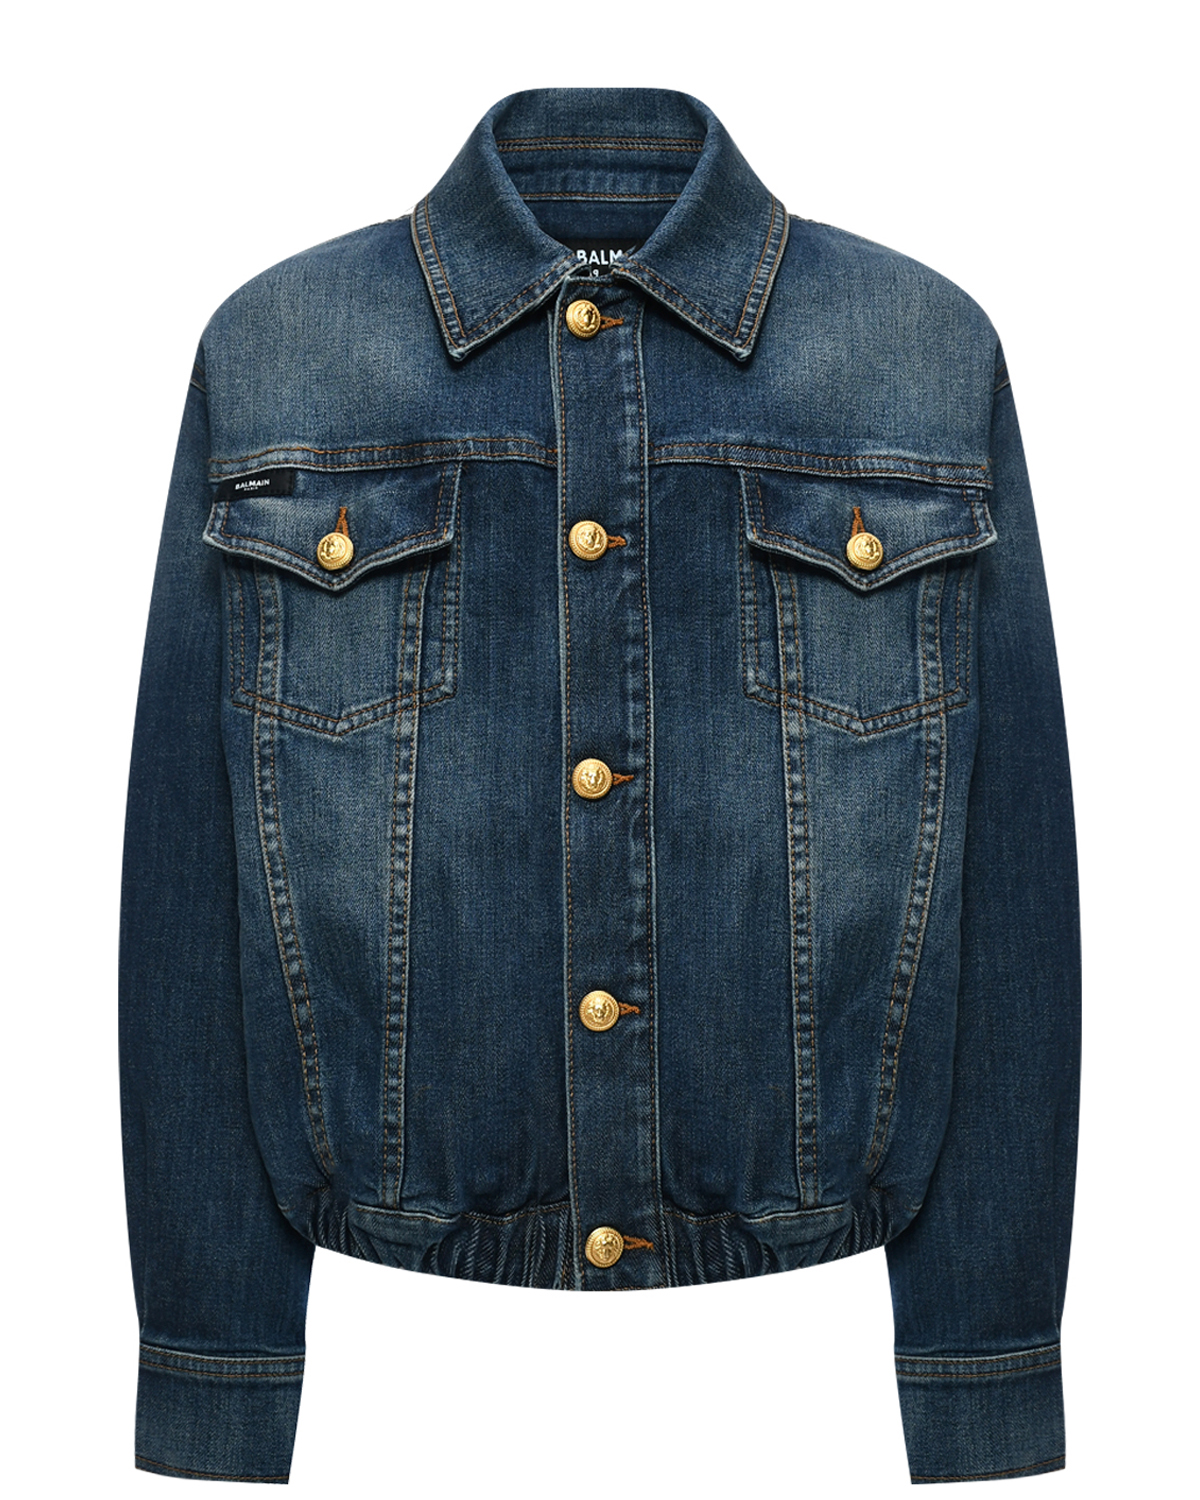 Выбеленная джинсовая куртка, синяя Balmain, размер 164, цвет синий - фото 1